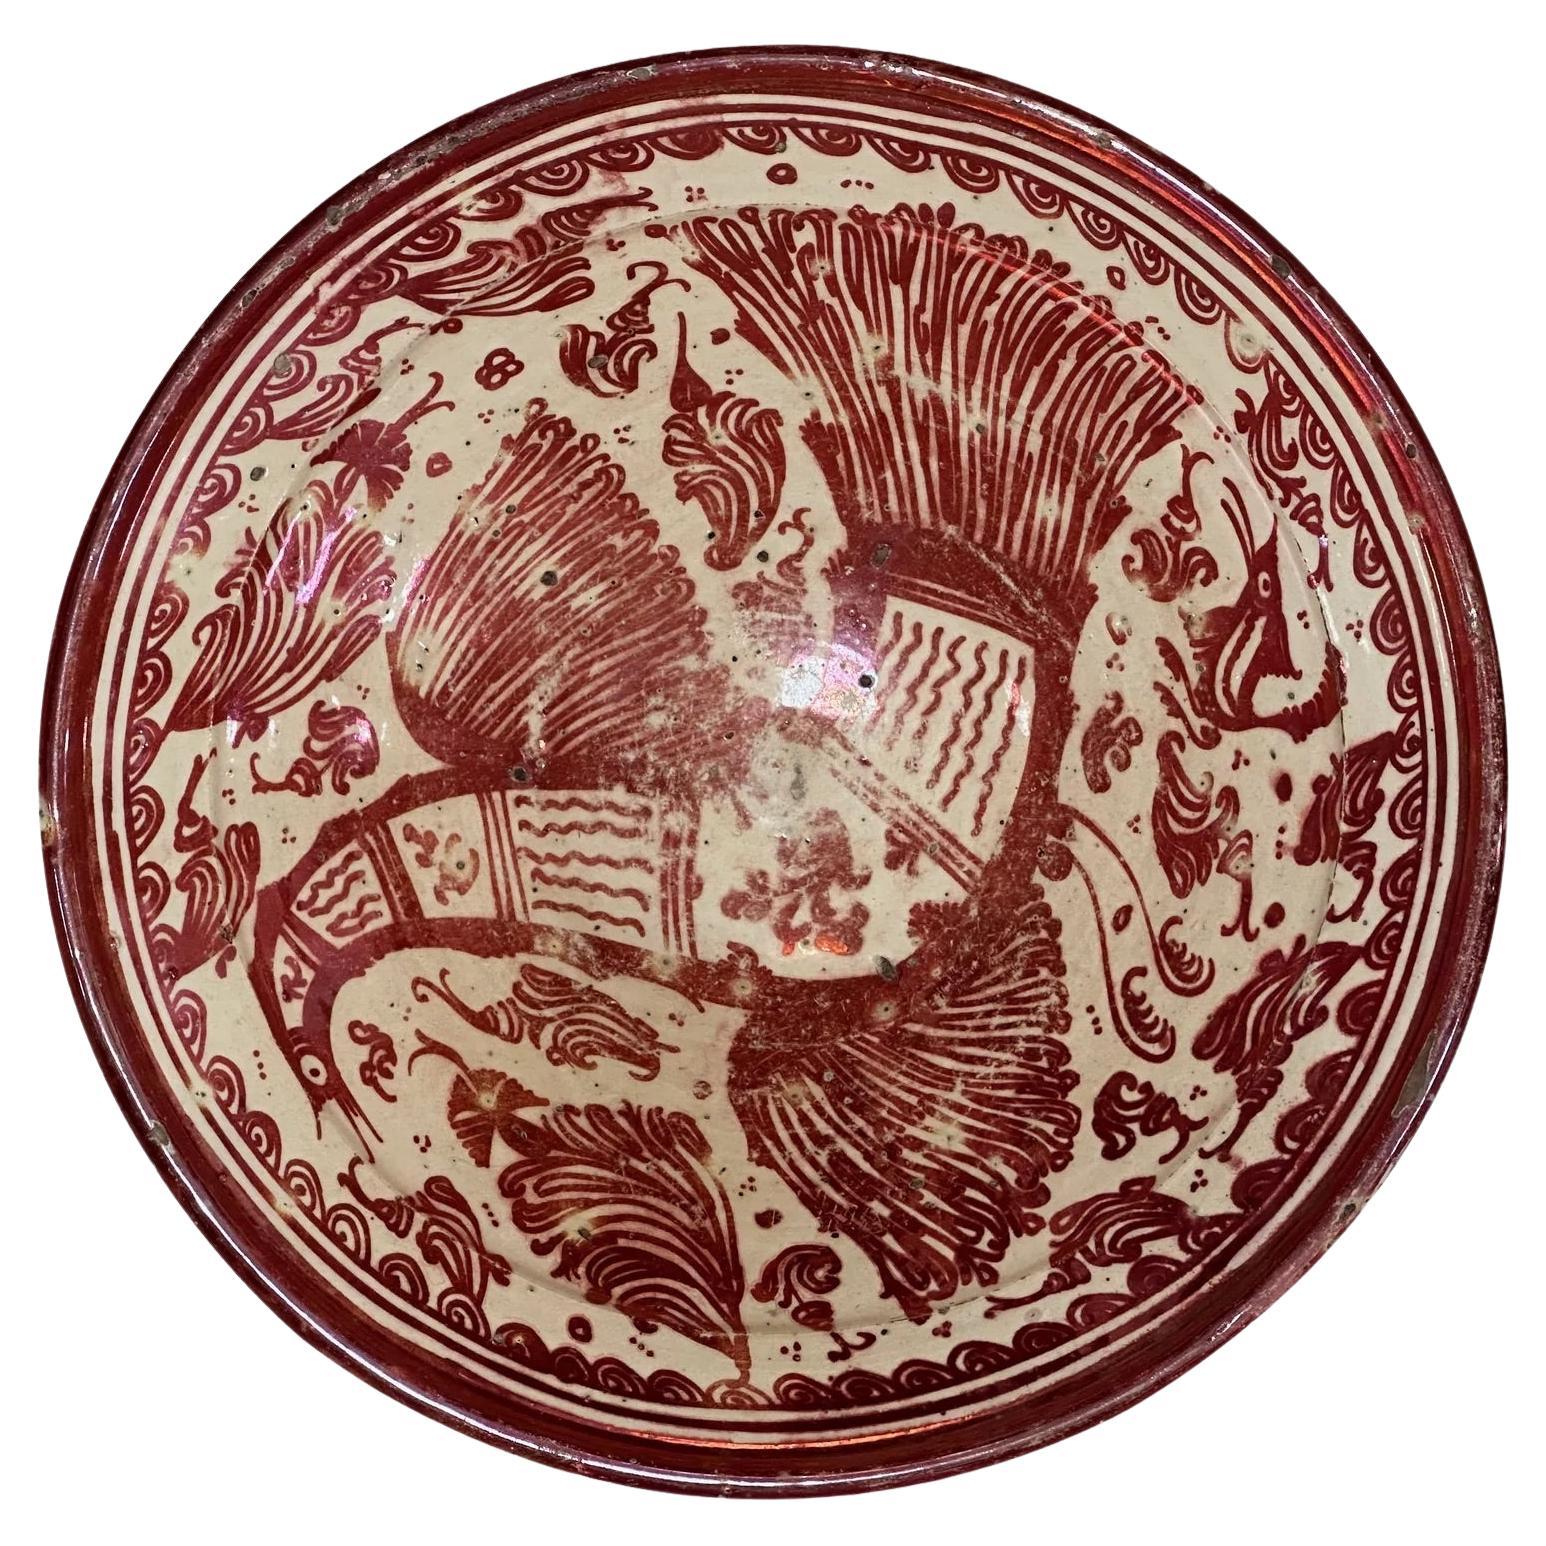 Hispano Moresque Copper Lustre Bowl, 17th century